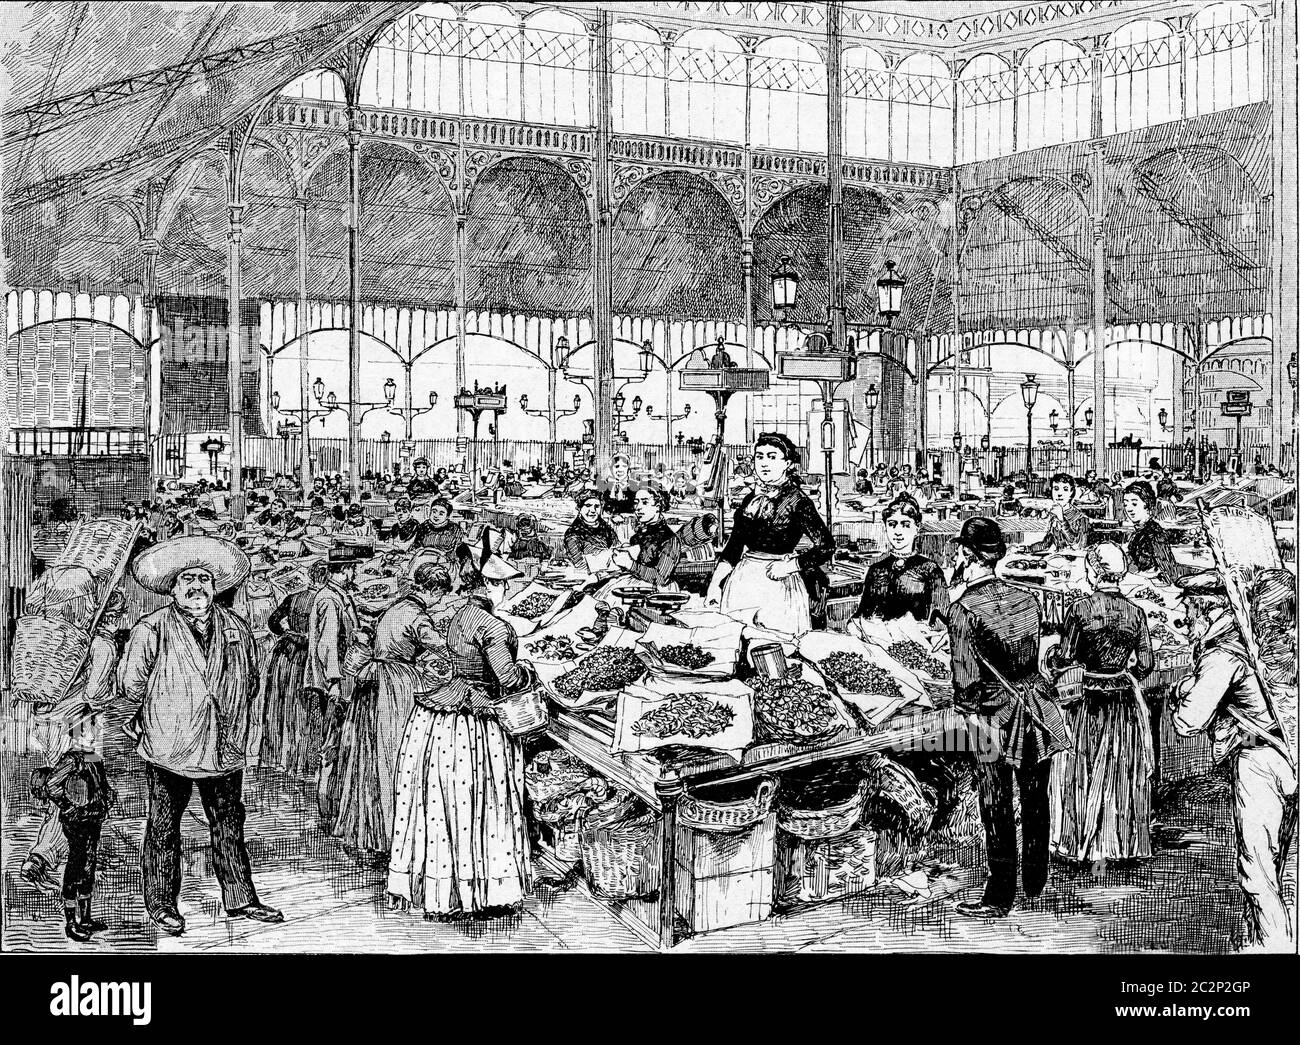 Un marché aux poissons à Paris, France. Gravure vintage. Banque D'Images